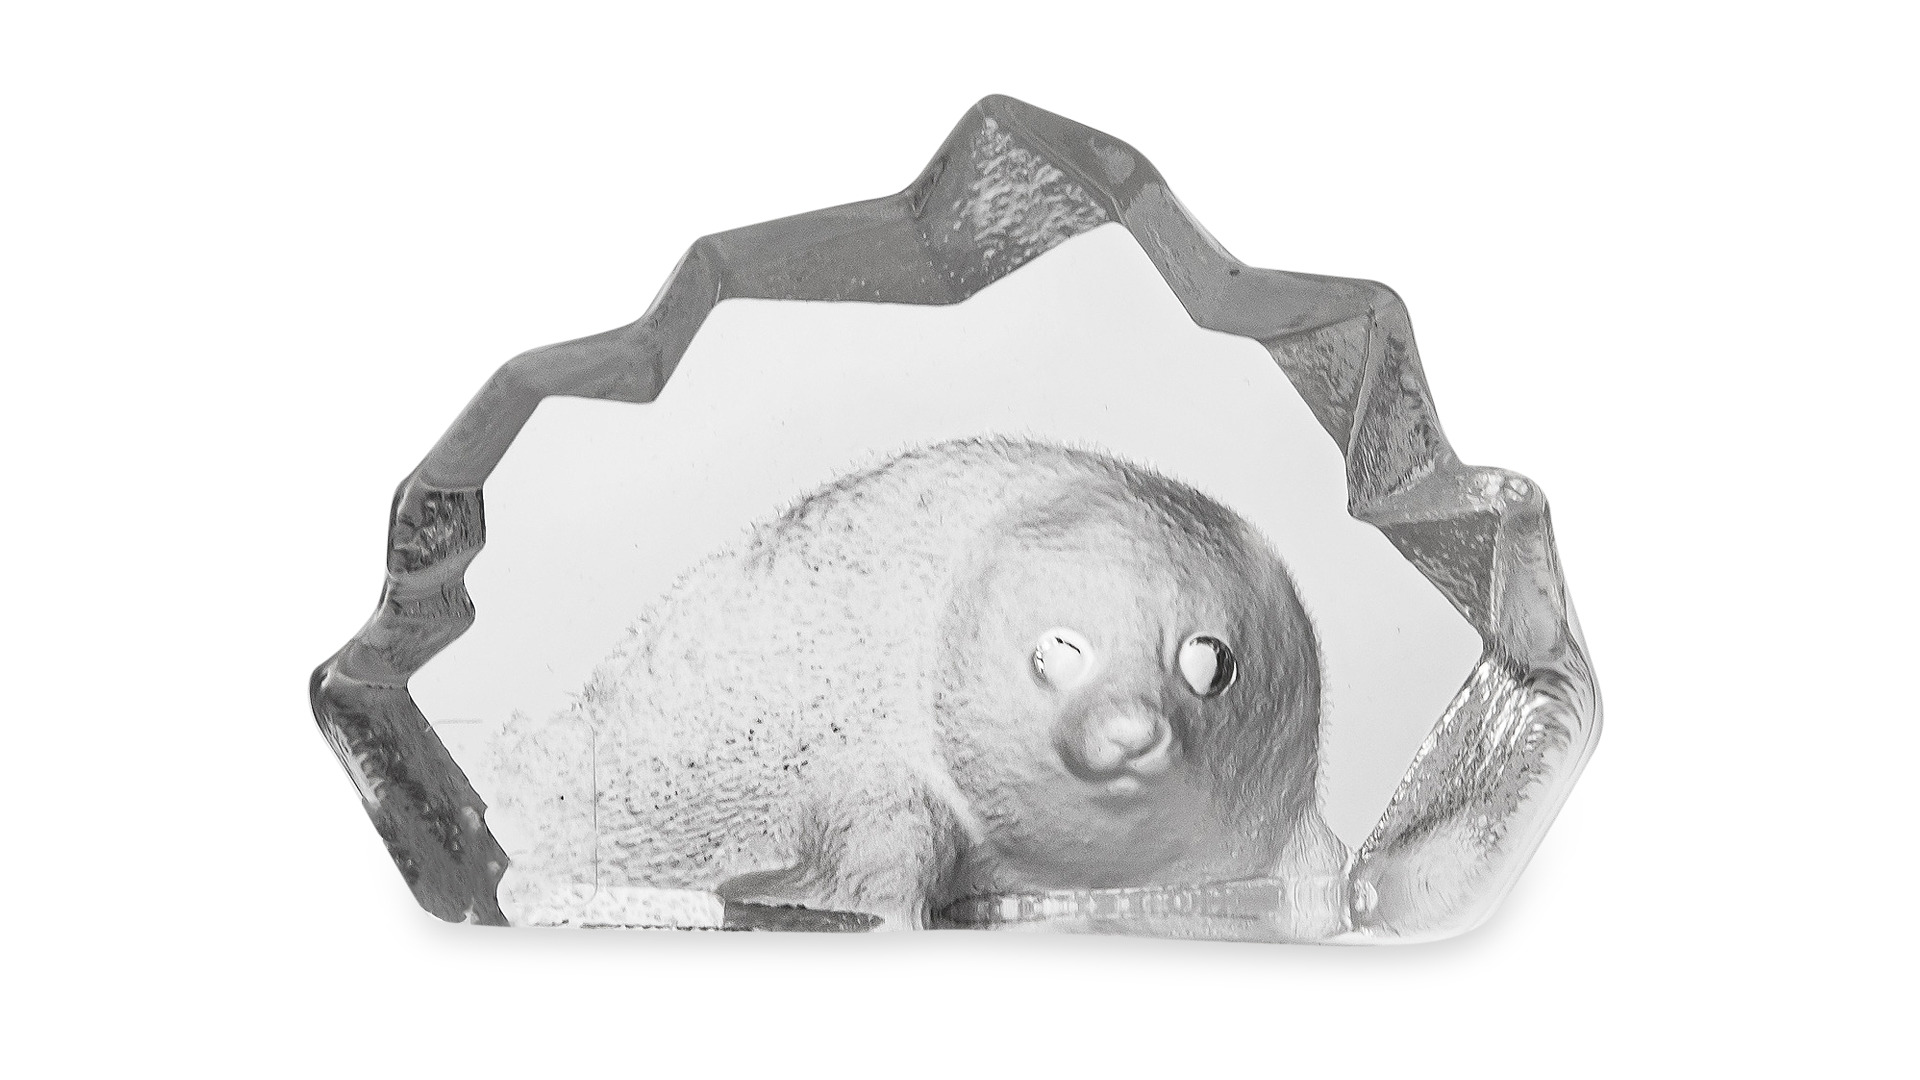 Скульптура Maleras Детеныш тюленя 7х5 см, хрусталь, белая